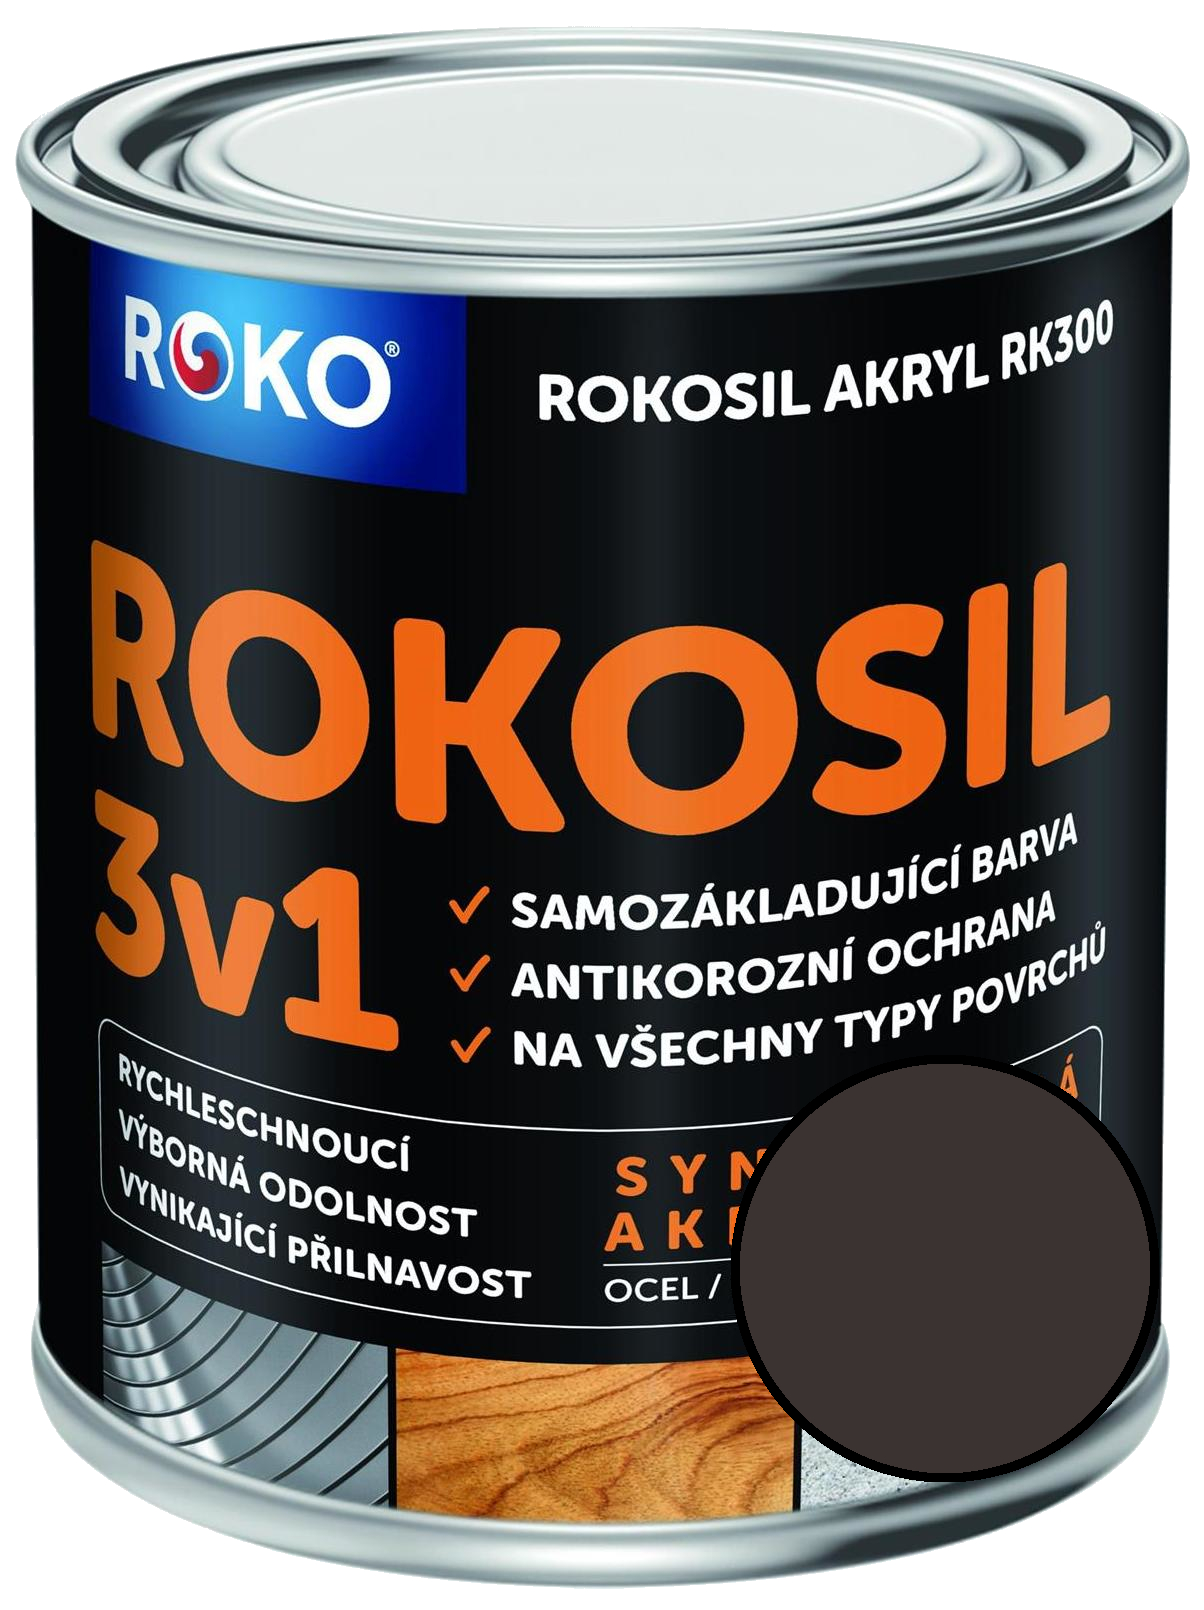 Barva samozákladující Rokosil akryl 3v1 RK 300 2880 hnědá tmavá